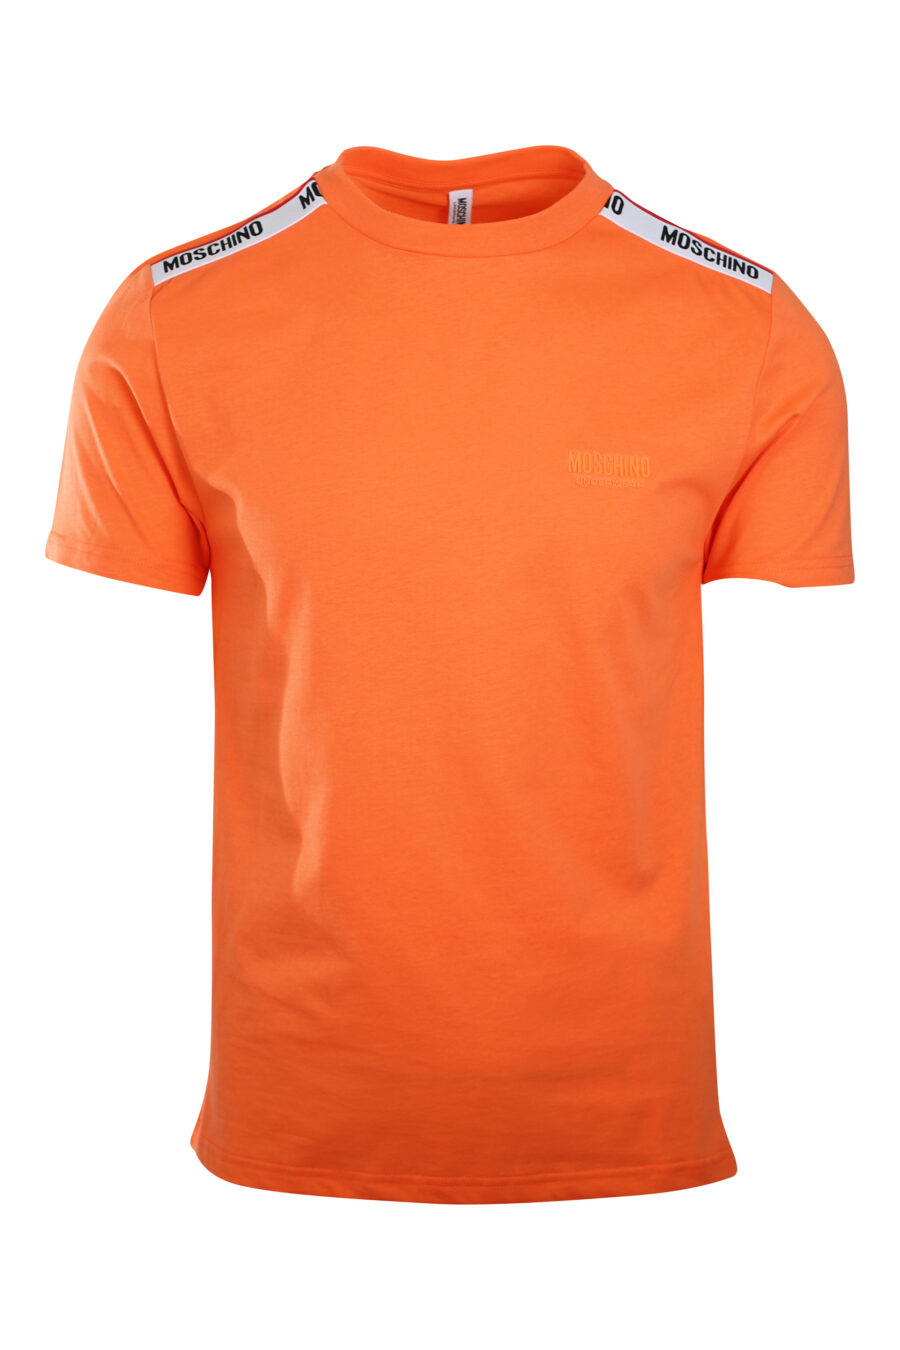 Orange T-shirt with logo on shoulder band - IMG 2204